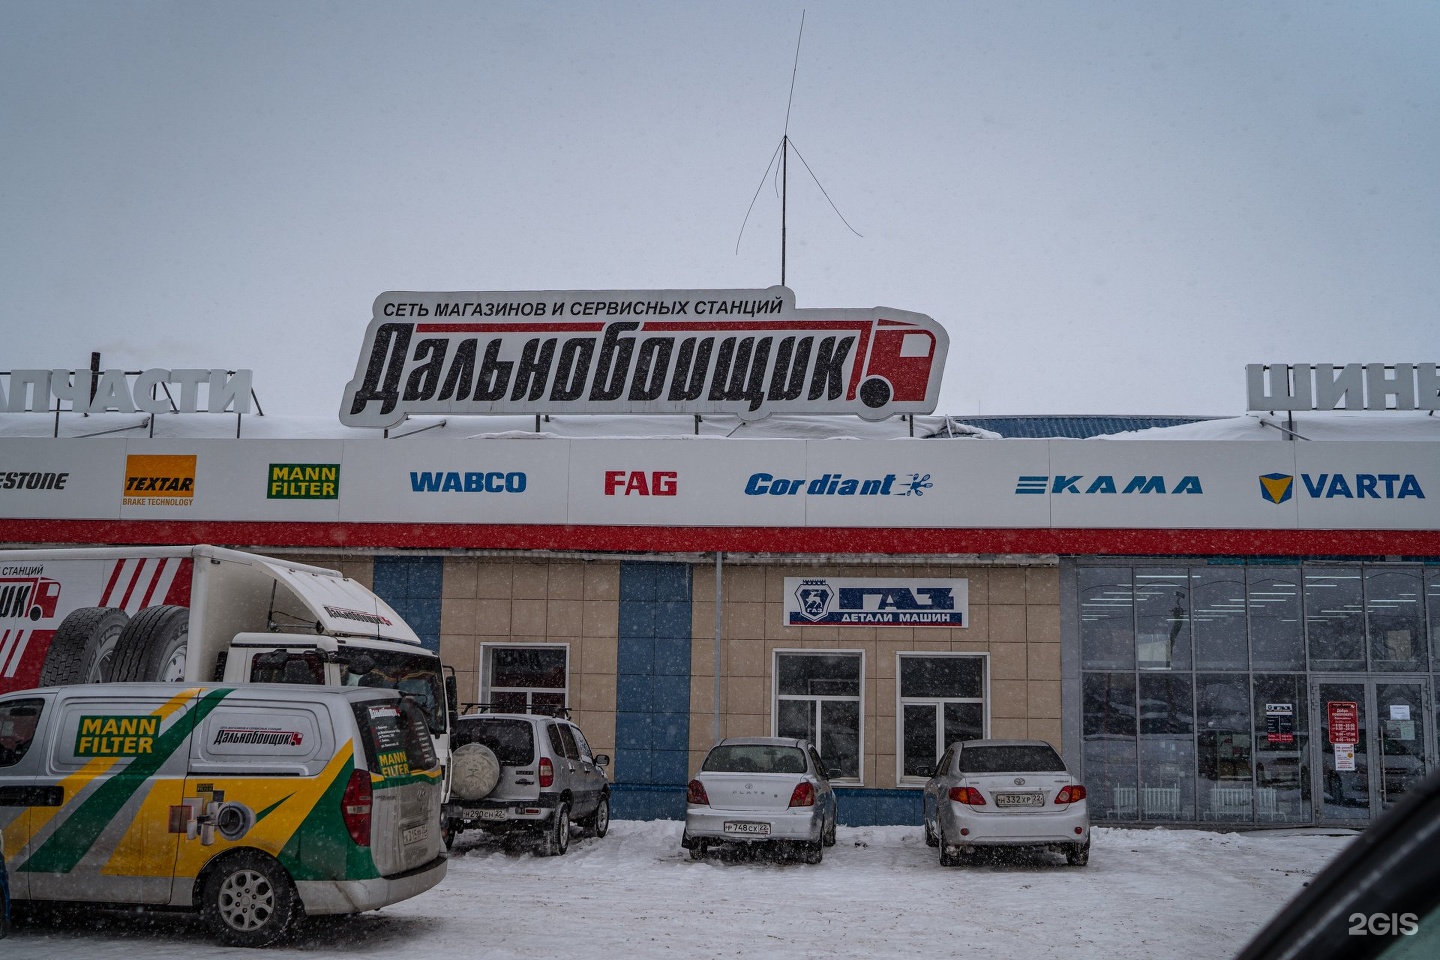 Телефон магазина дальнобойщик. Дальнобойщик магазин в Новосибирске. СТО дальнобойщик. Магазин для дальнобойщиков. Дальнобойщик магазин в Новосибирске на Толмачевской.